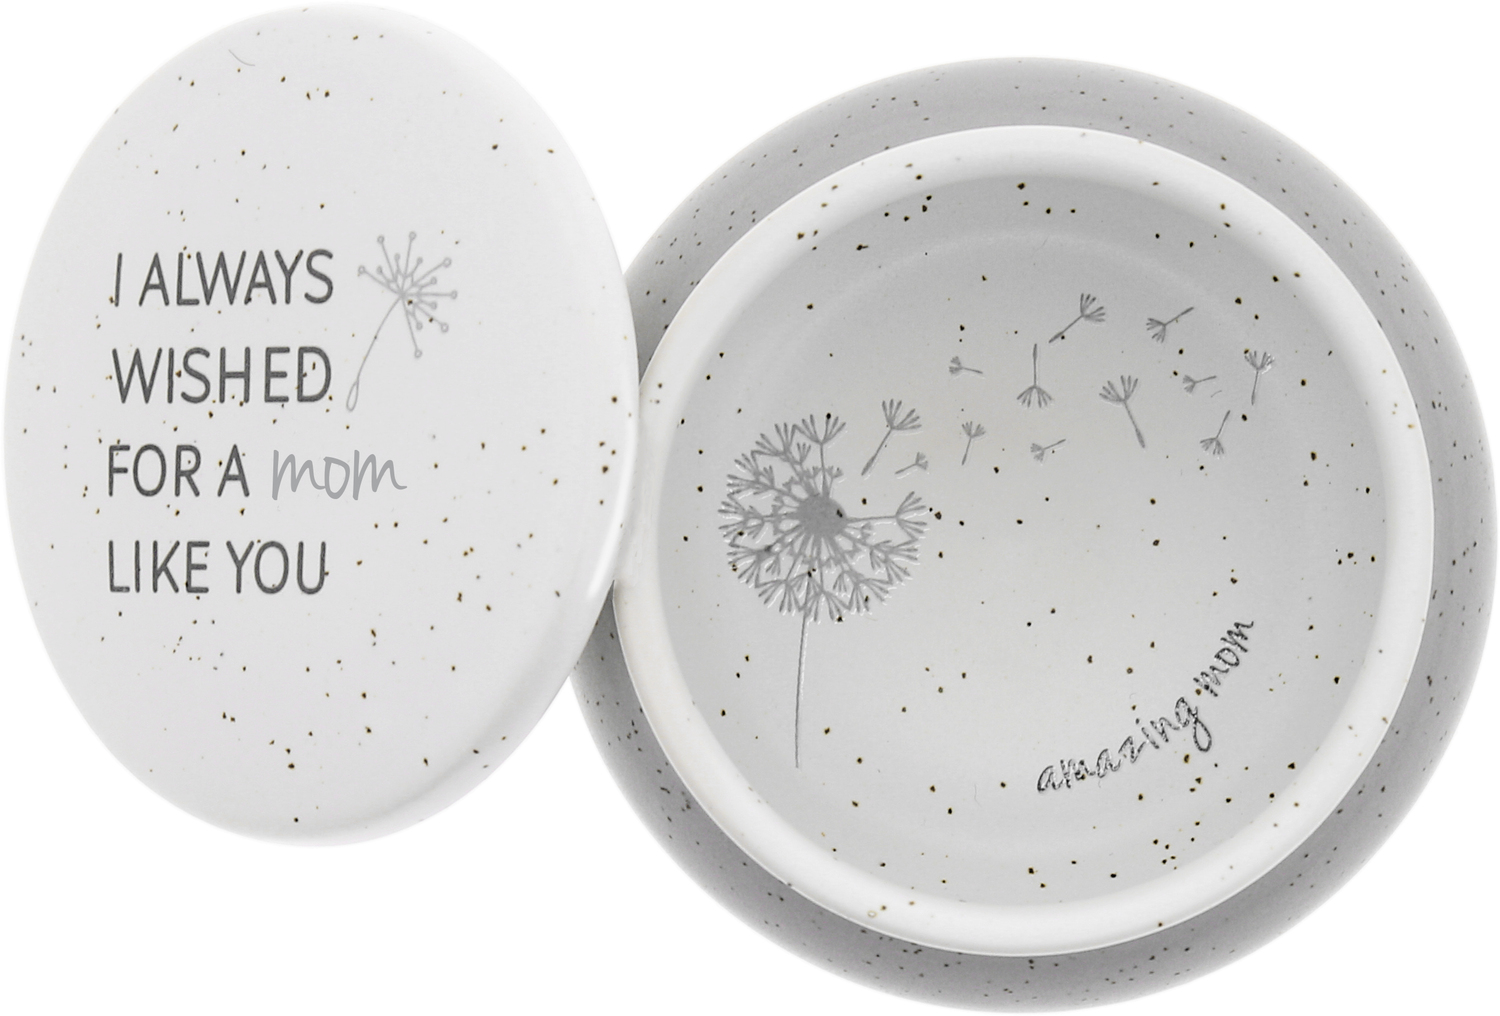 Mom Like You by I Always Wished - Mom Like You - 3.5" Ceramic Keepsake Box